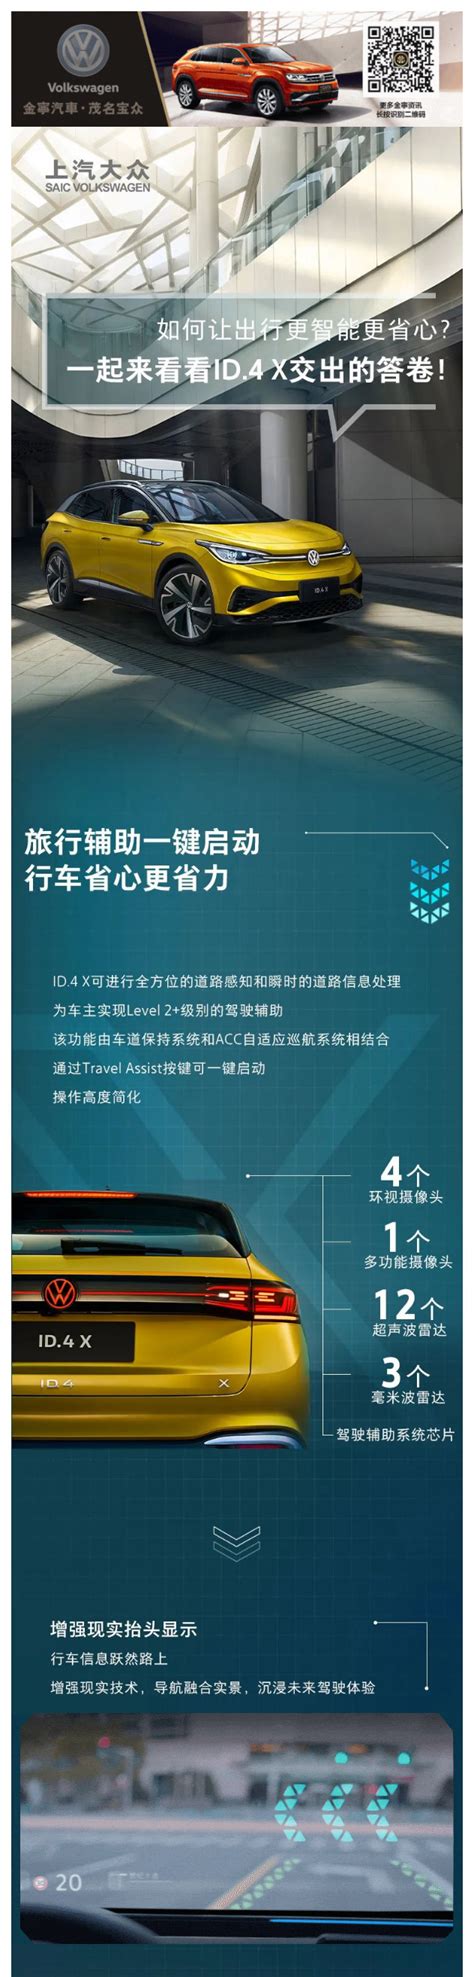 【茂名宝众】智慧行车的“压舱石” 解析ID.4 X的L2+级自动驾驶辅助